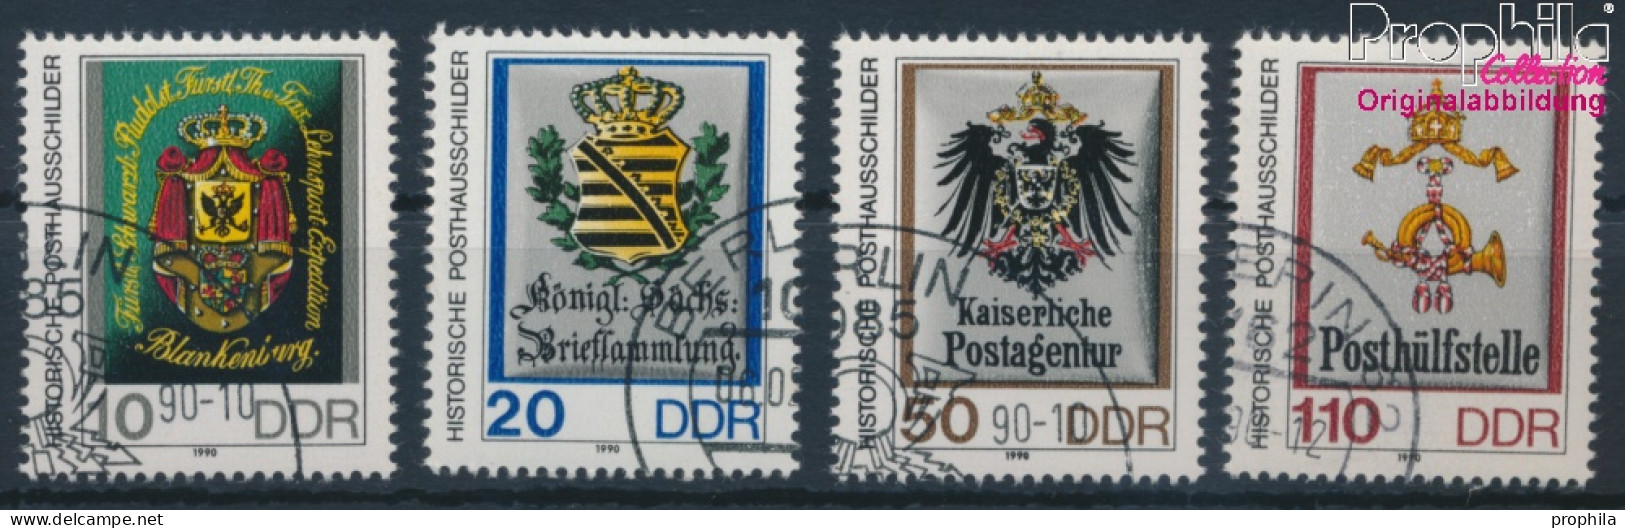 DDR 3302-3305 (kompl.Ausgabe) Gestempelt 1990 Posthausschilder Kleinformat (10405745 - Oblitérés